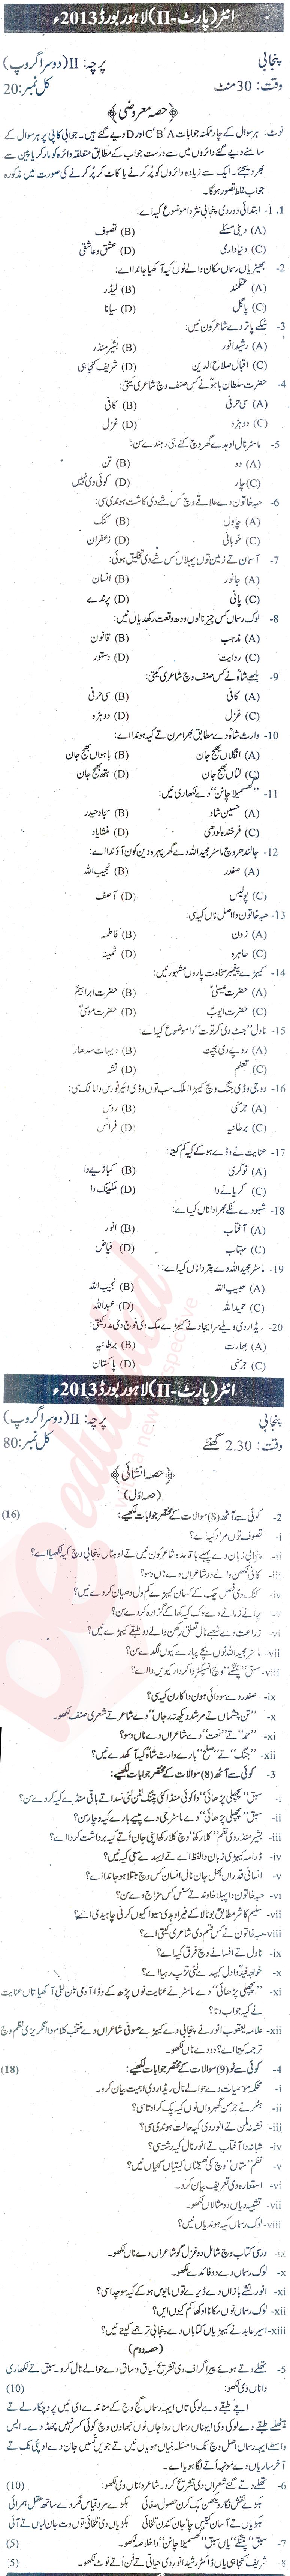 Punjabi FA Part 2 Past Paper Group 2 BISE Lahore 2013